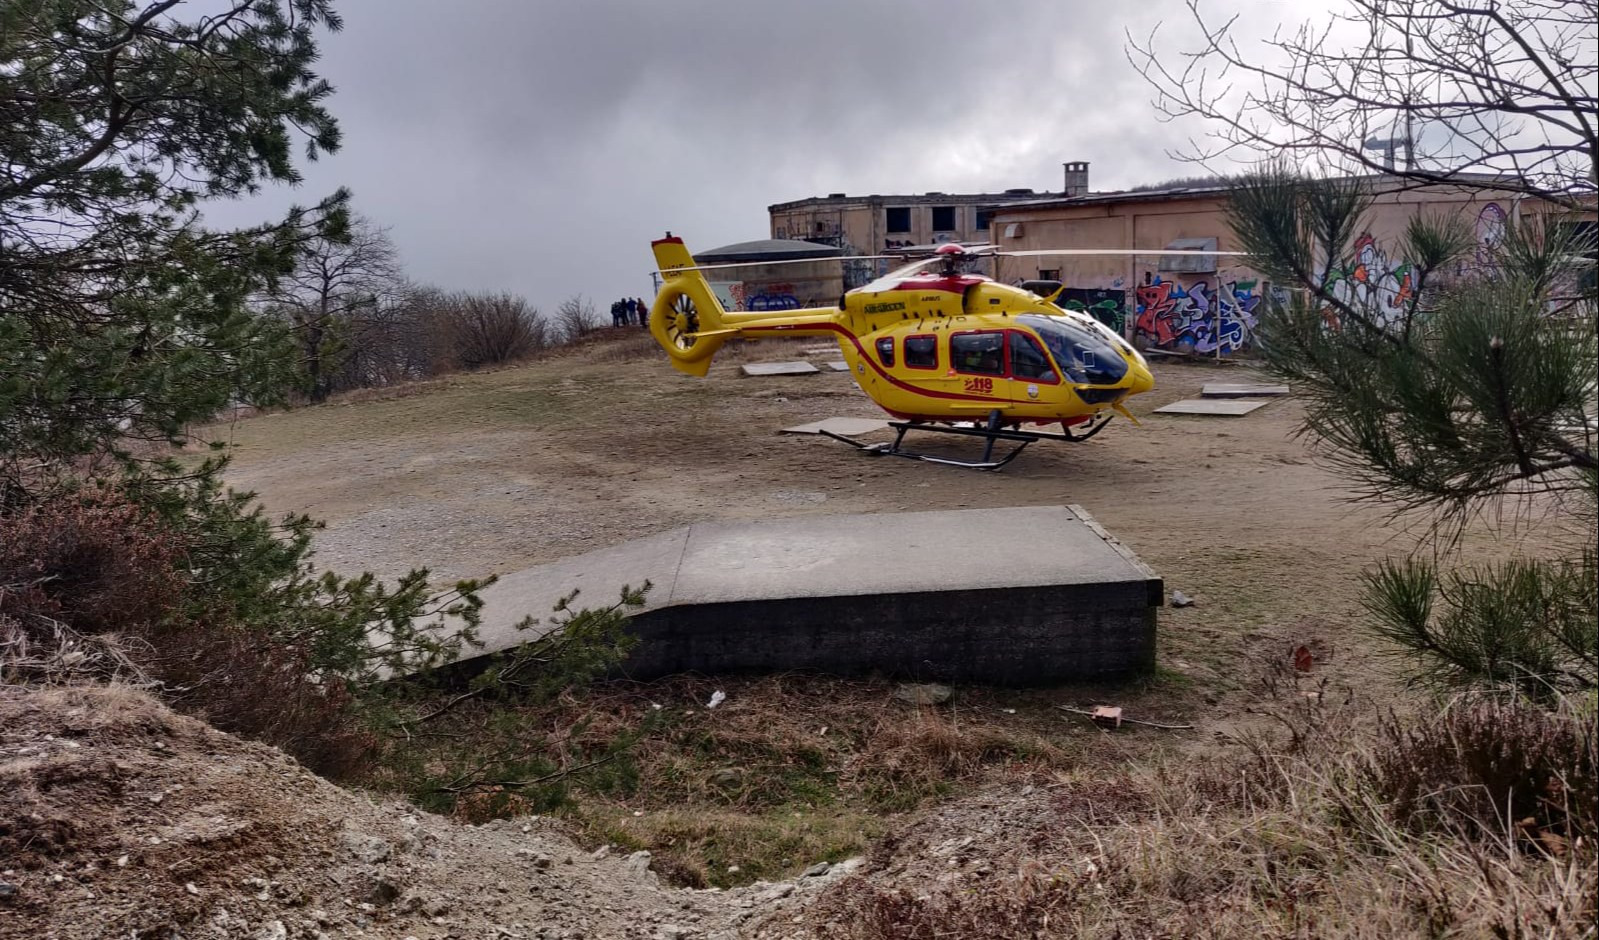 Imperiese, anziano si infilza con un tombino: all'ospedale in elicottero